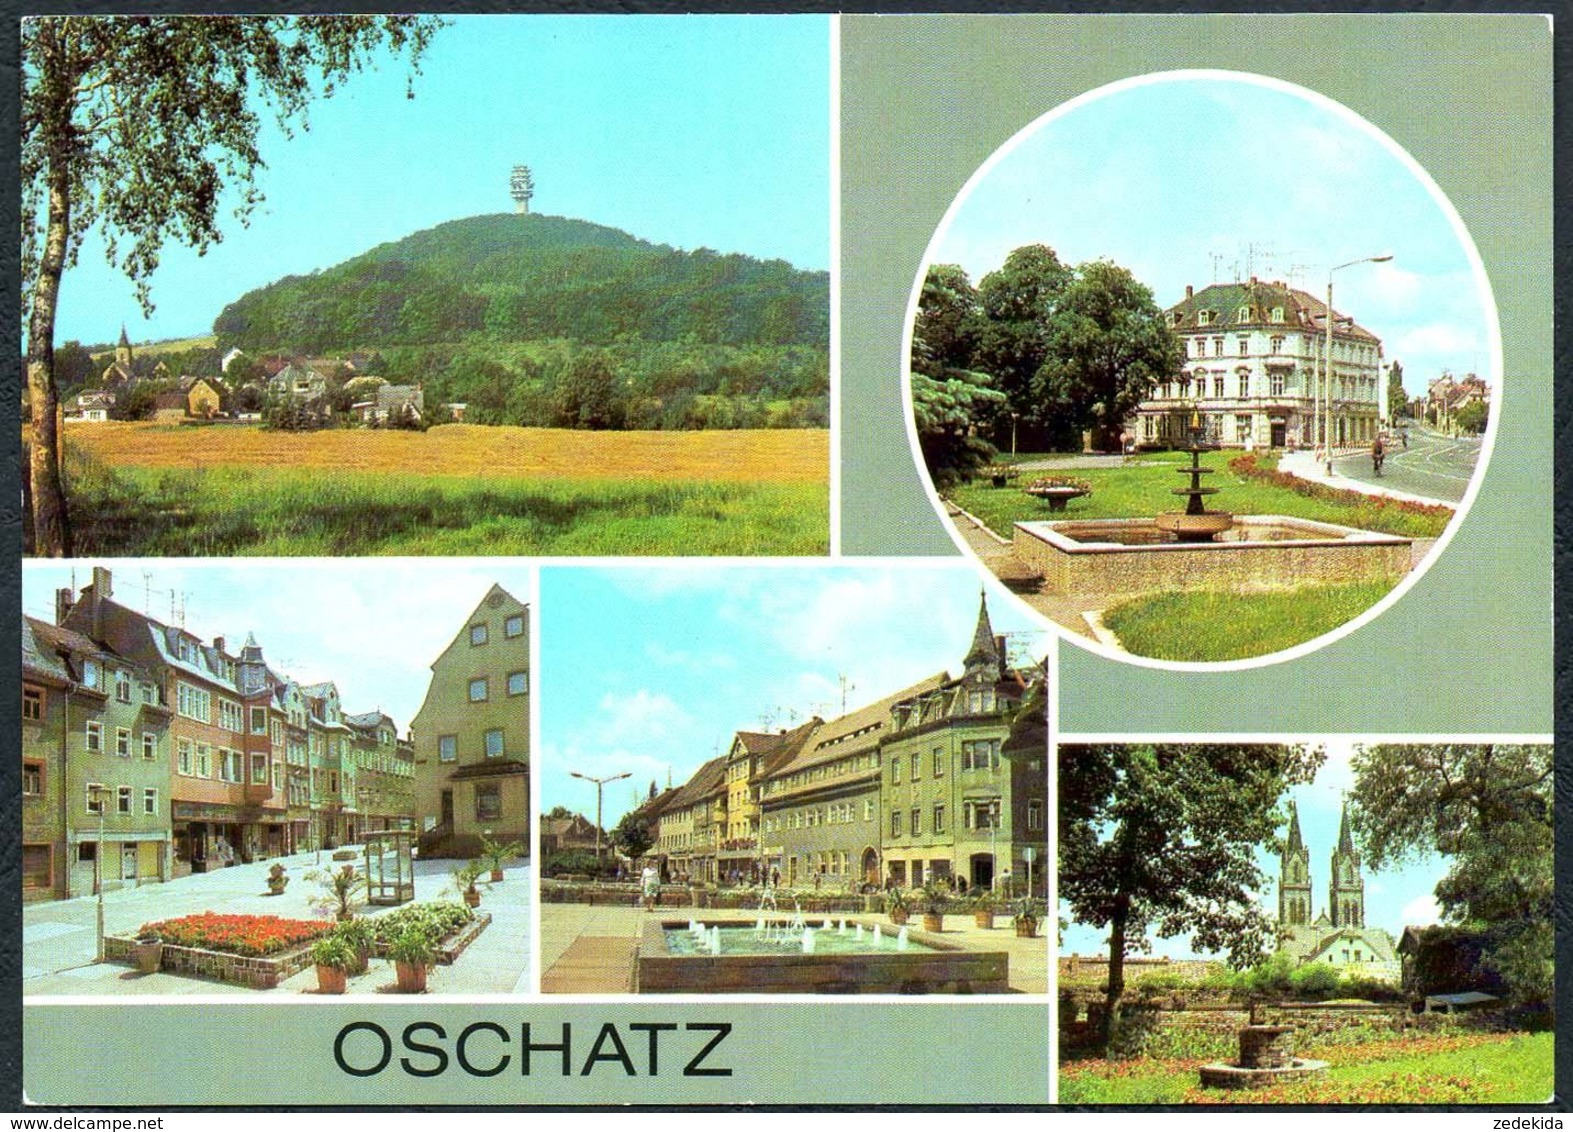 D6674 - TOP Oschatz - Bild Und Heimat Reichenbach - Oschatz